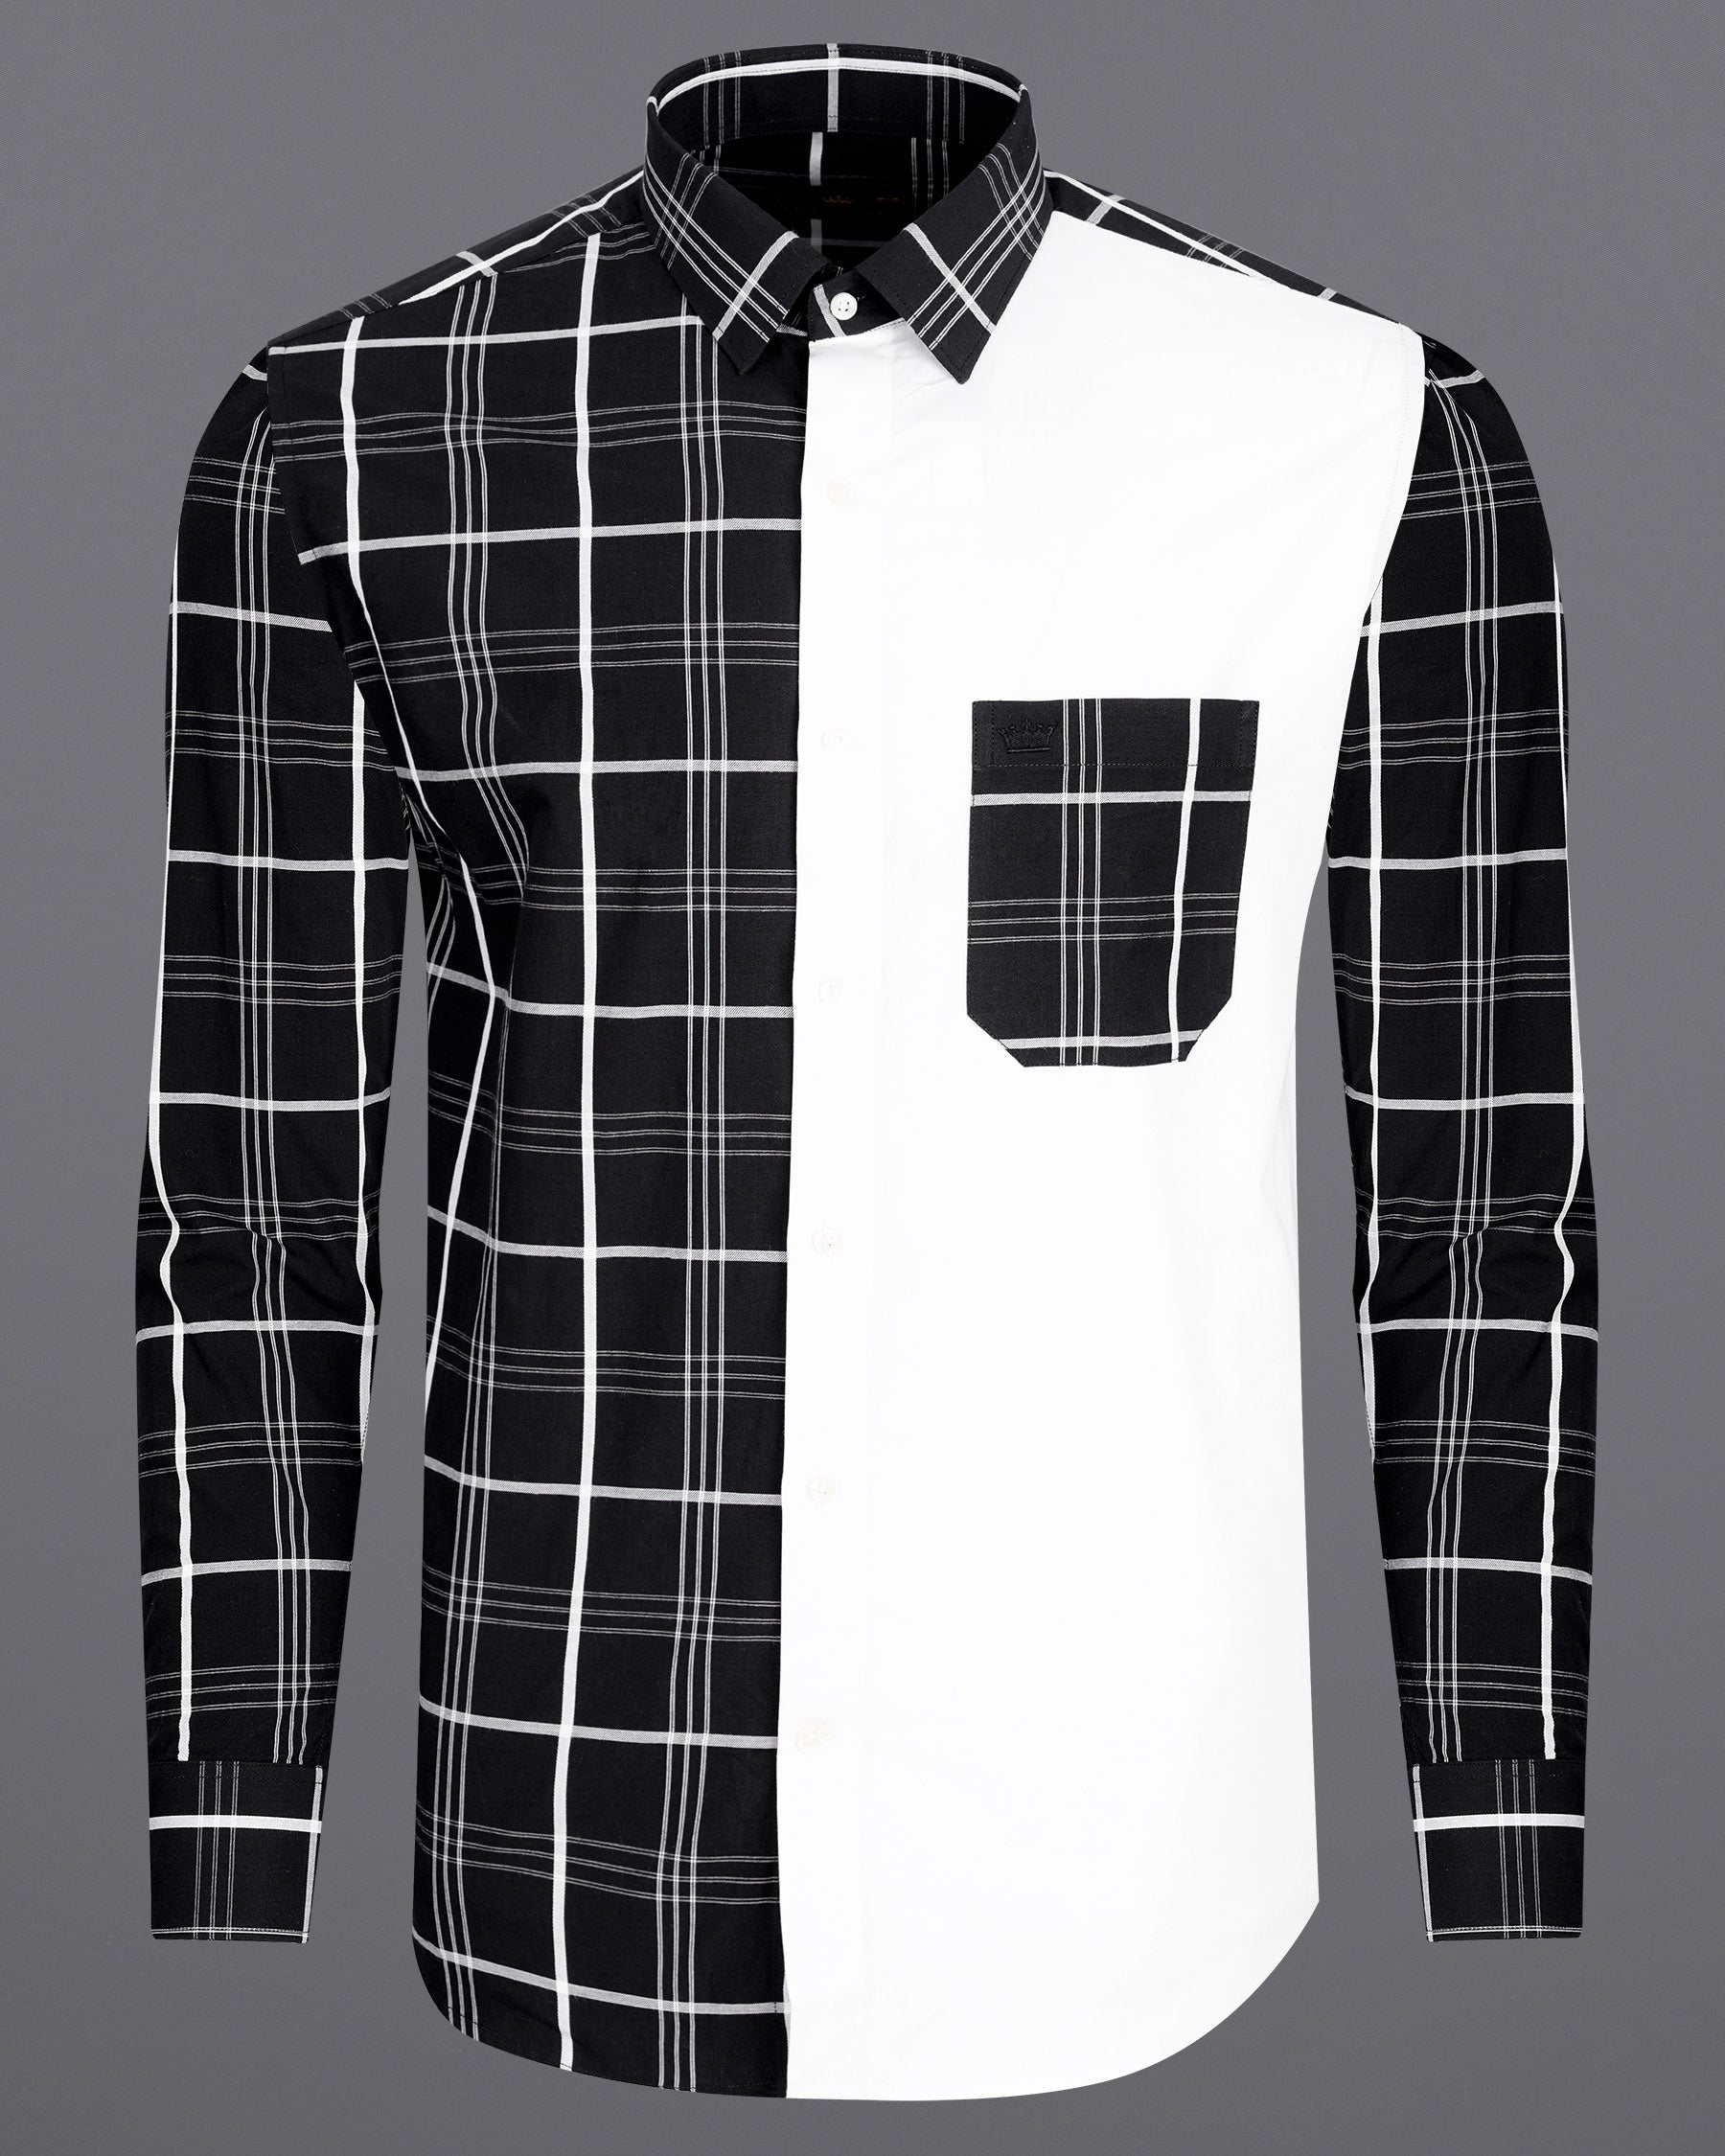 Jade Black and White Dobby Textured Premium Giza Cotton Designer Shirt 7716-P189-38, 7716-P189-39, 7716-P189-40, 7716-P189-42, 7716-P189-44, 7716-P189-46, 7716-P189-48, 7716-P189-50, 7716-P189-52